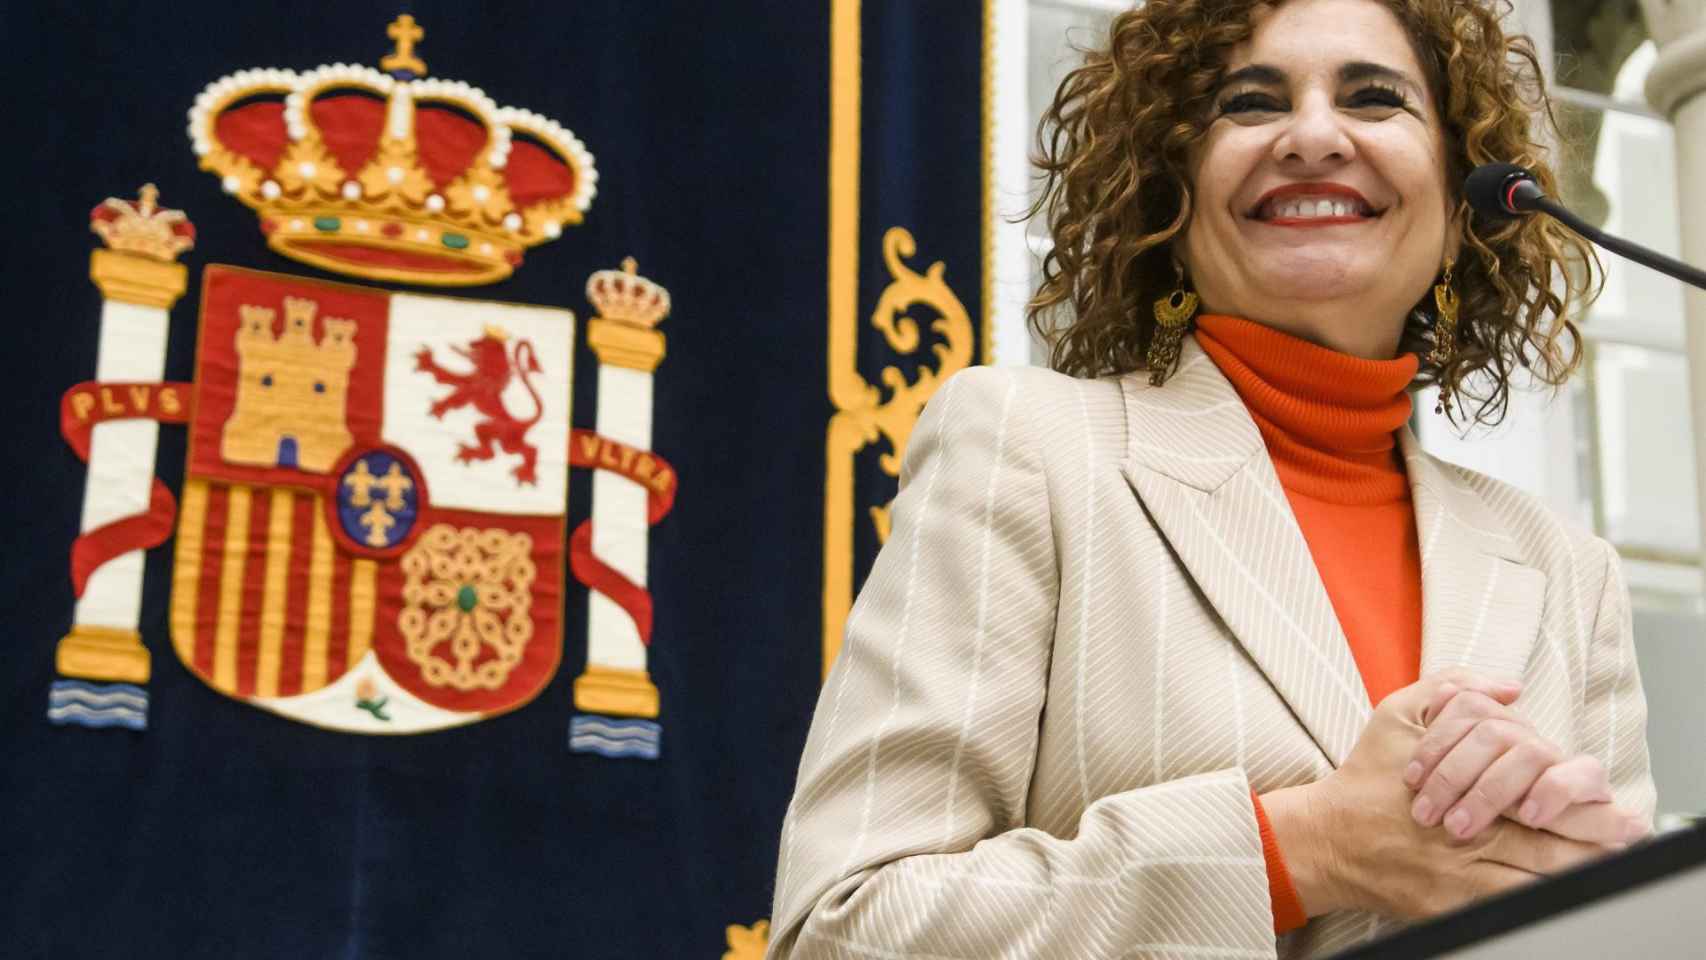 La ministra de Hacienda, María Jesús Montero, este martes en Sevilla.